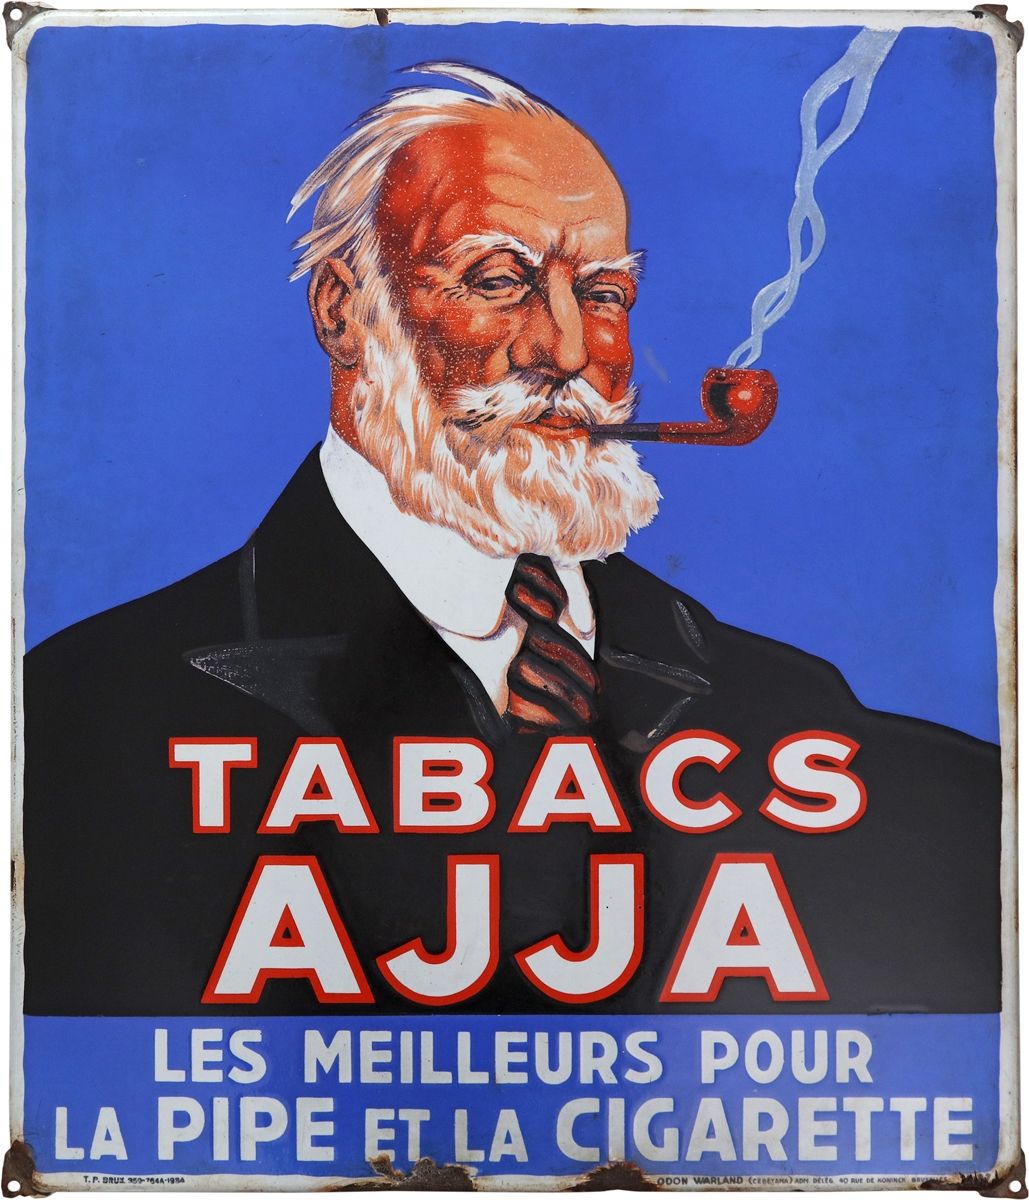 Null Insegna in smalto Ajja Tabacs, Belgio, datata 1934

Insegna in smalto di Aj&hellip;